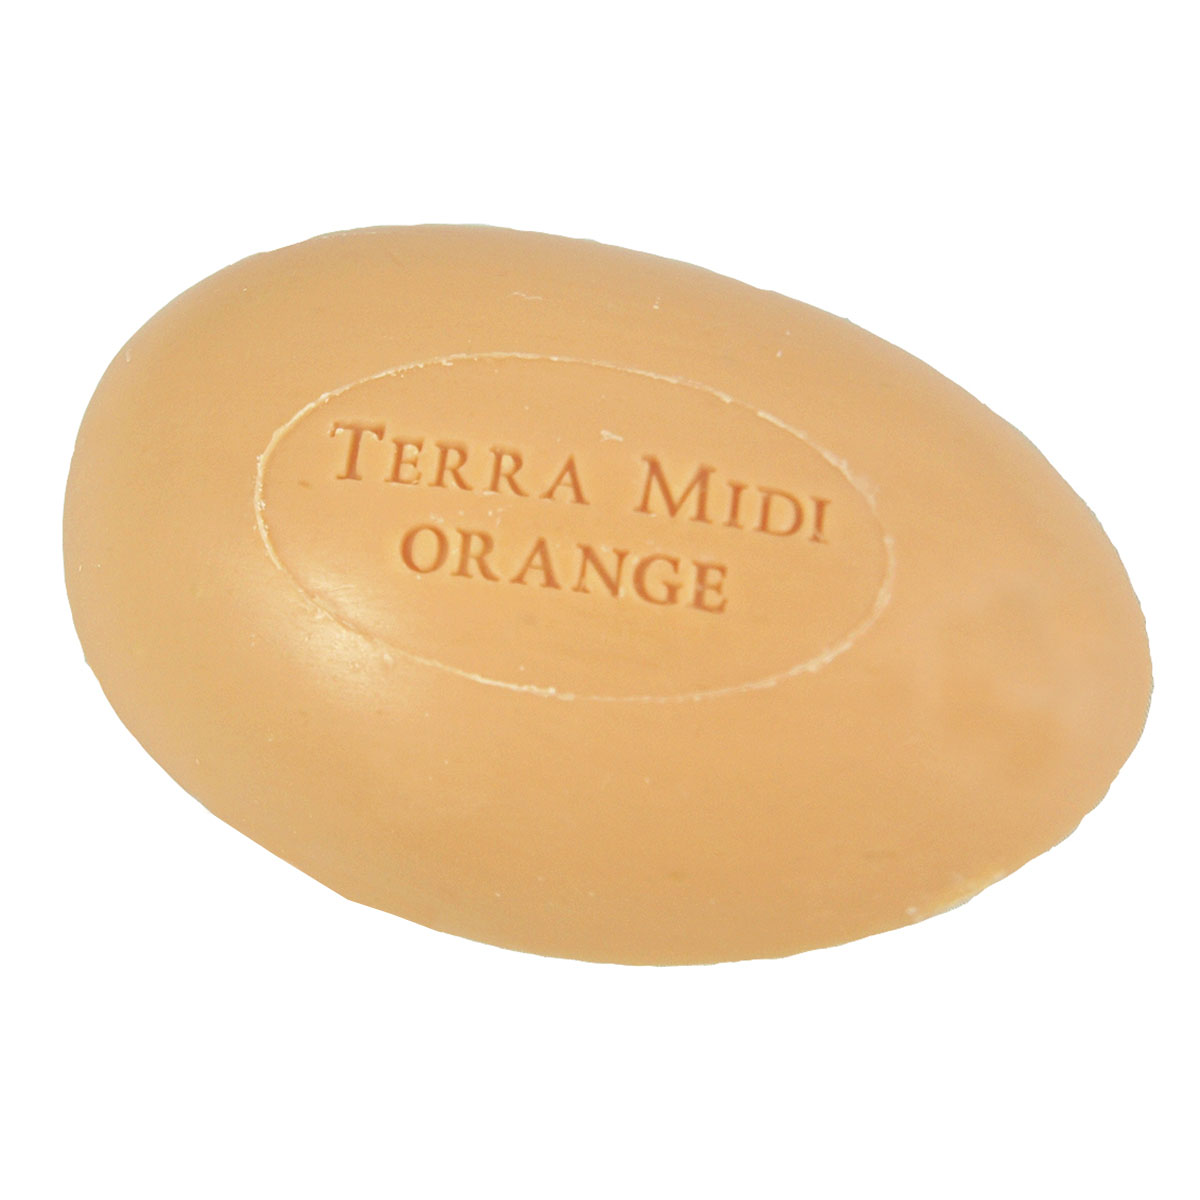 Gåsäggstvål apelsinblom-honung 160g Terra Midi